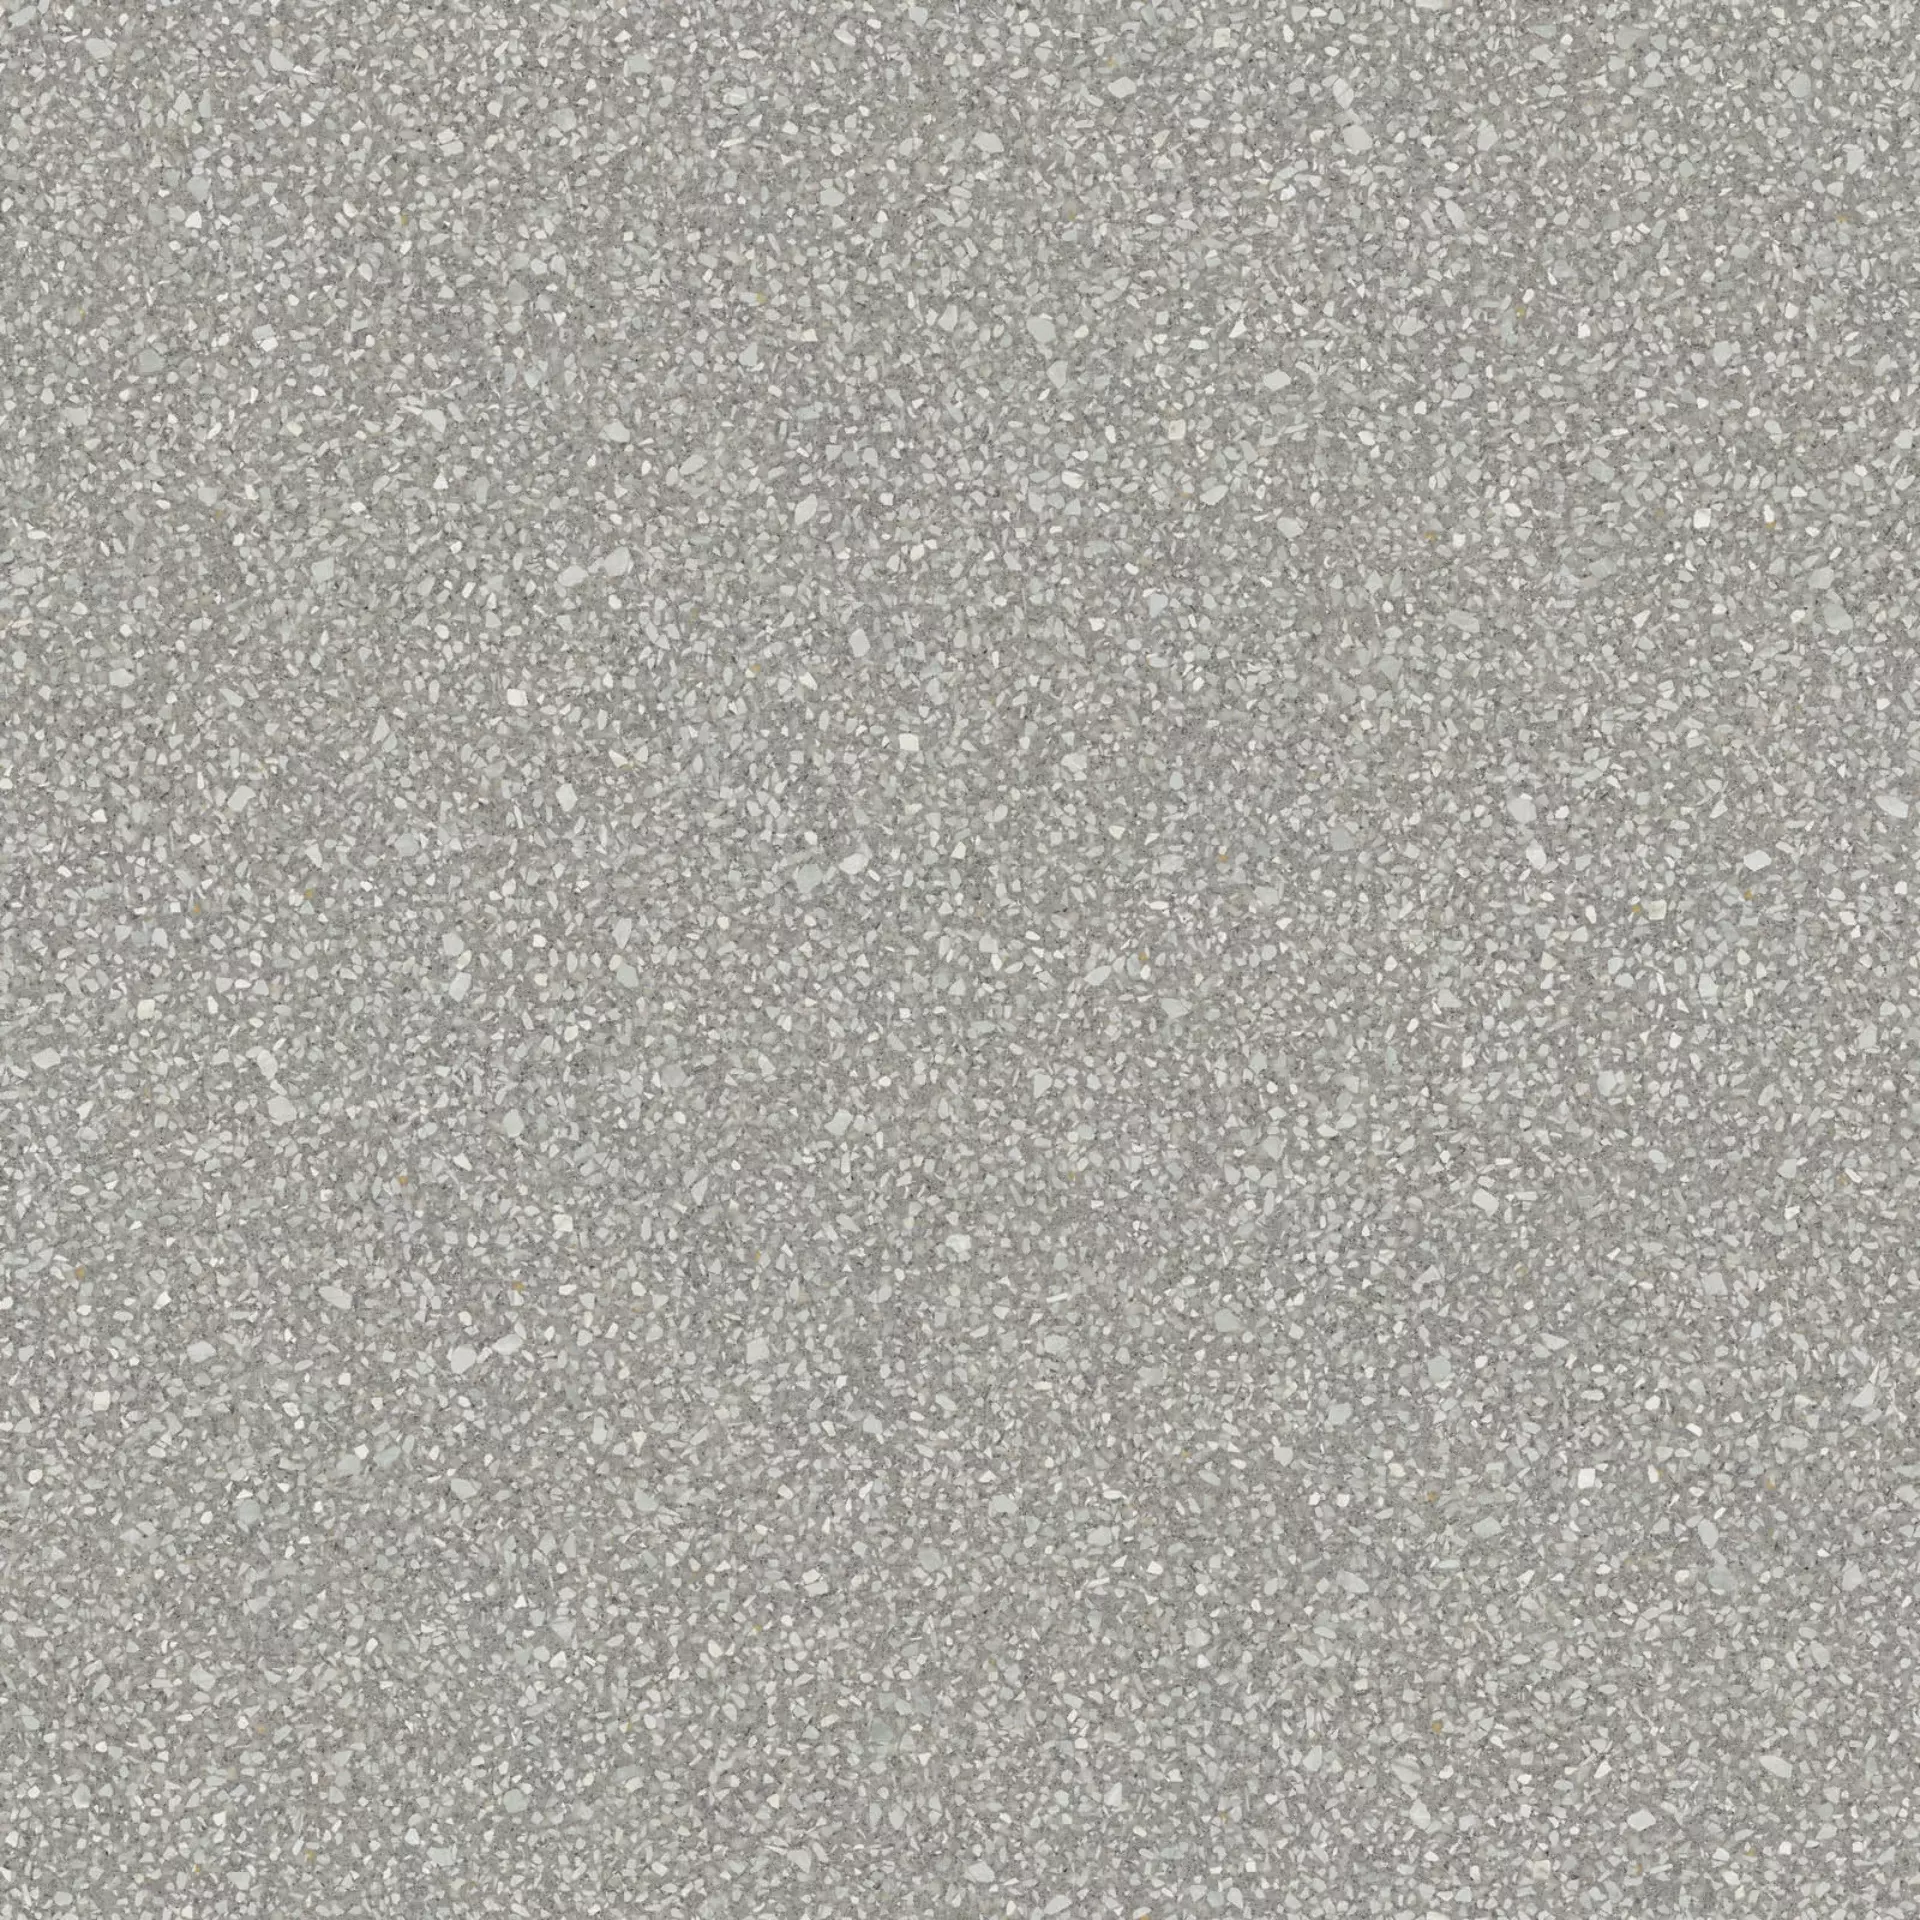 Abk Blend Dots Grey Lappato PF60005831 90x90cm rektifiziert 8,5mm